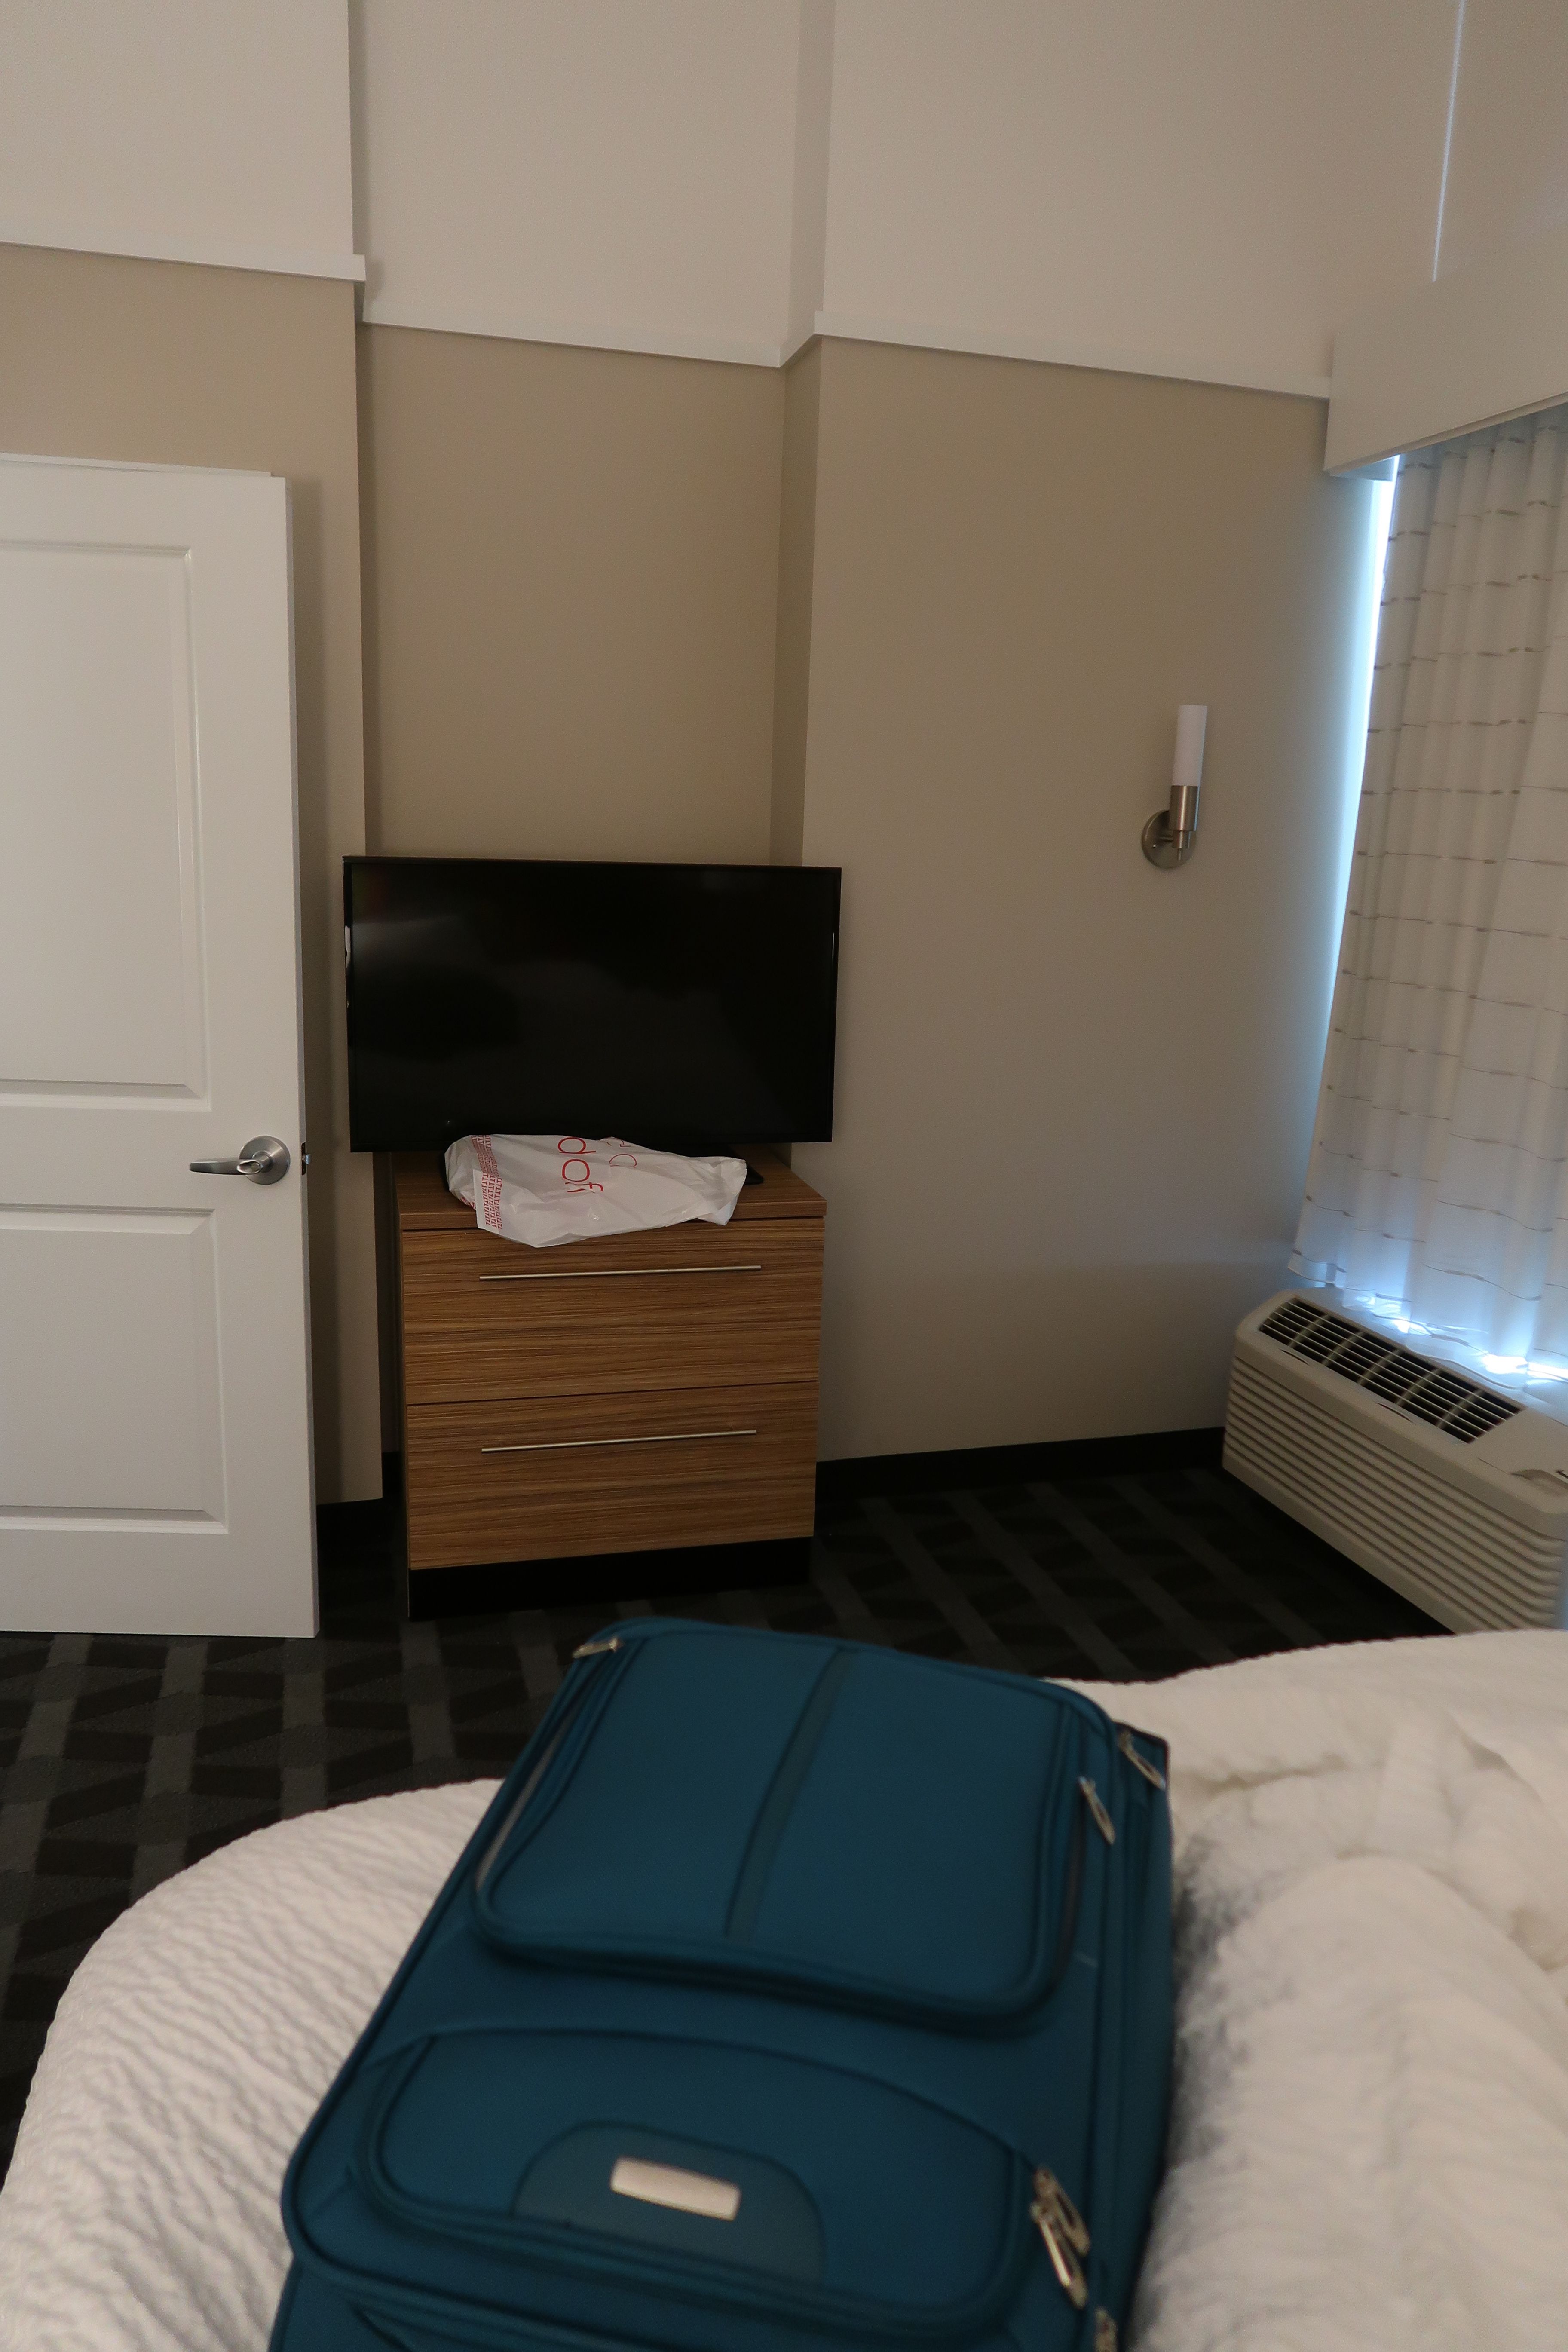 Bedroom TV Towneplace Suites Marriott in Auburn, Alabama!.JPG